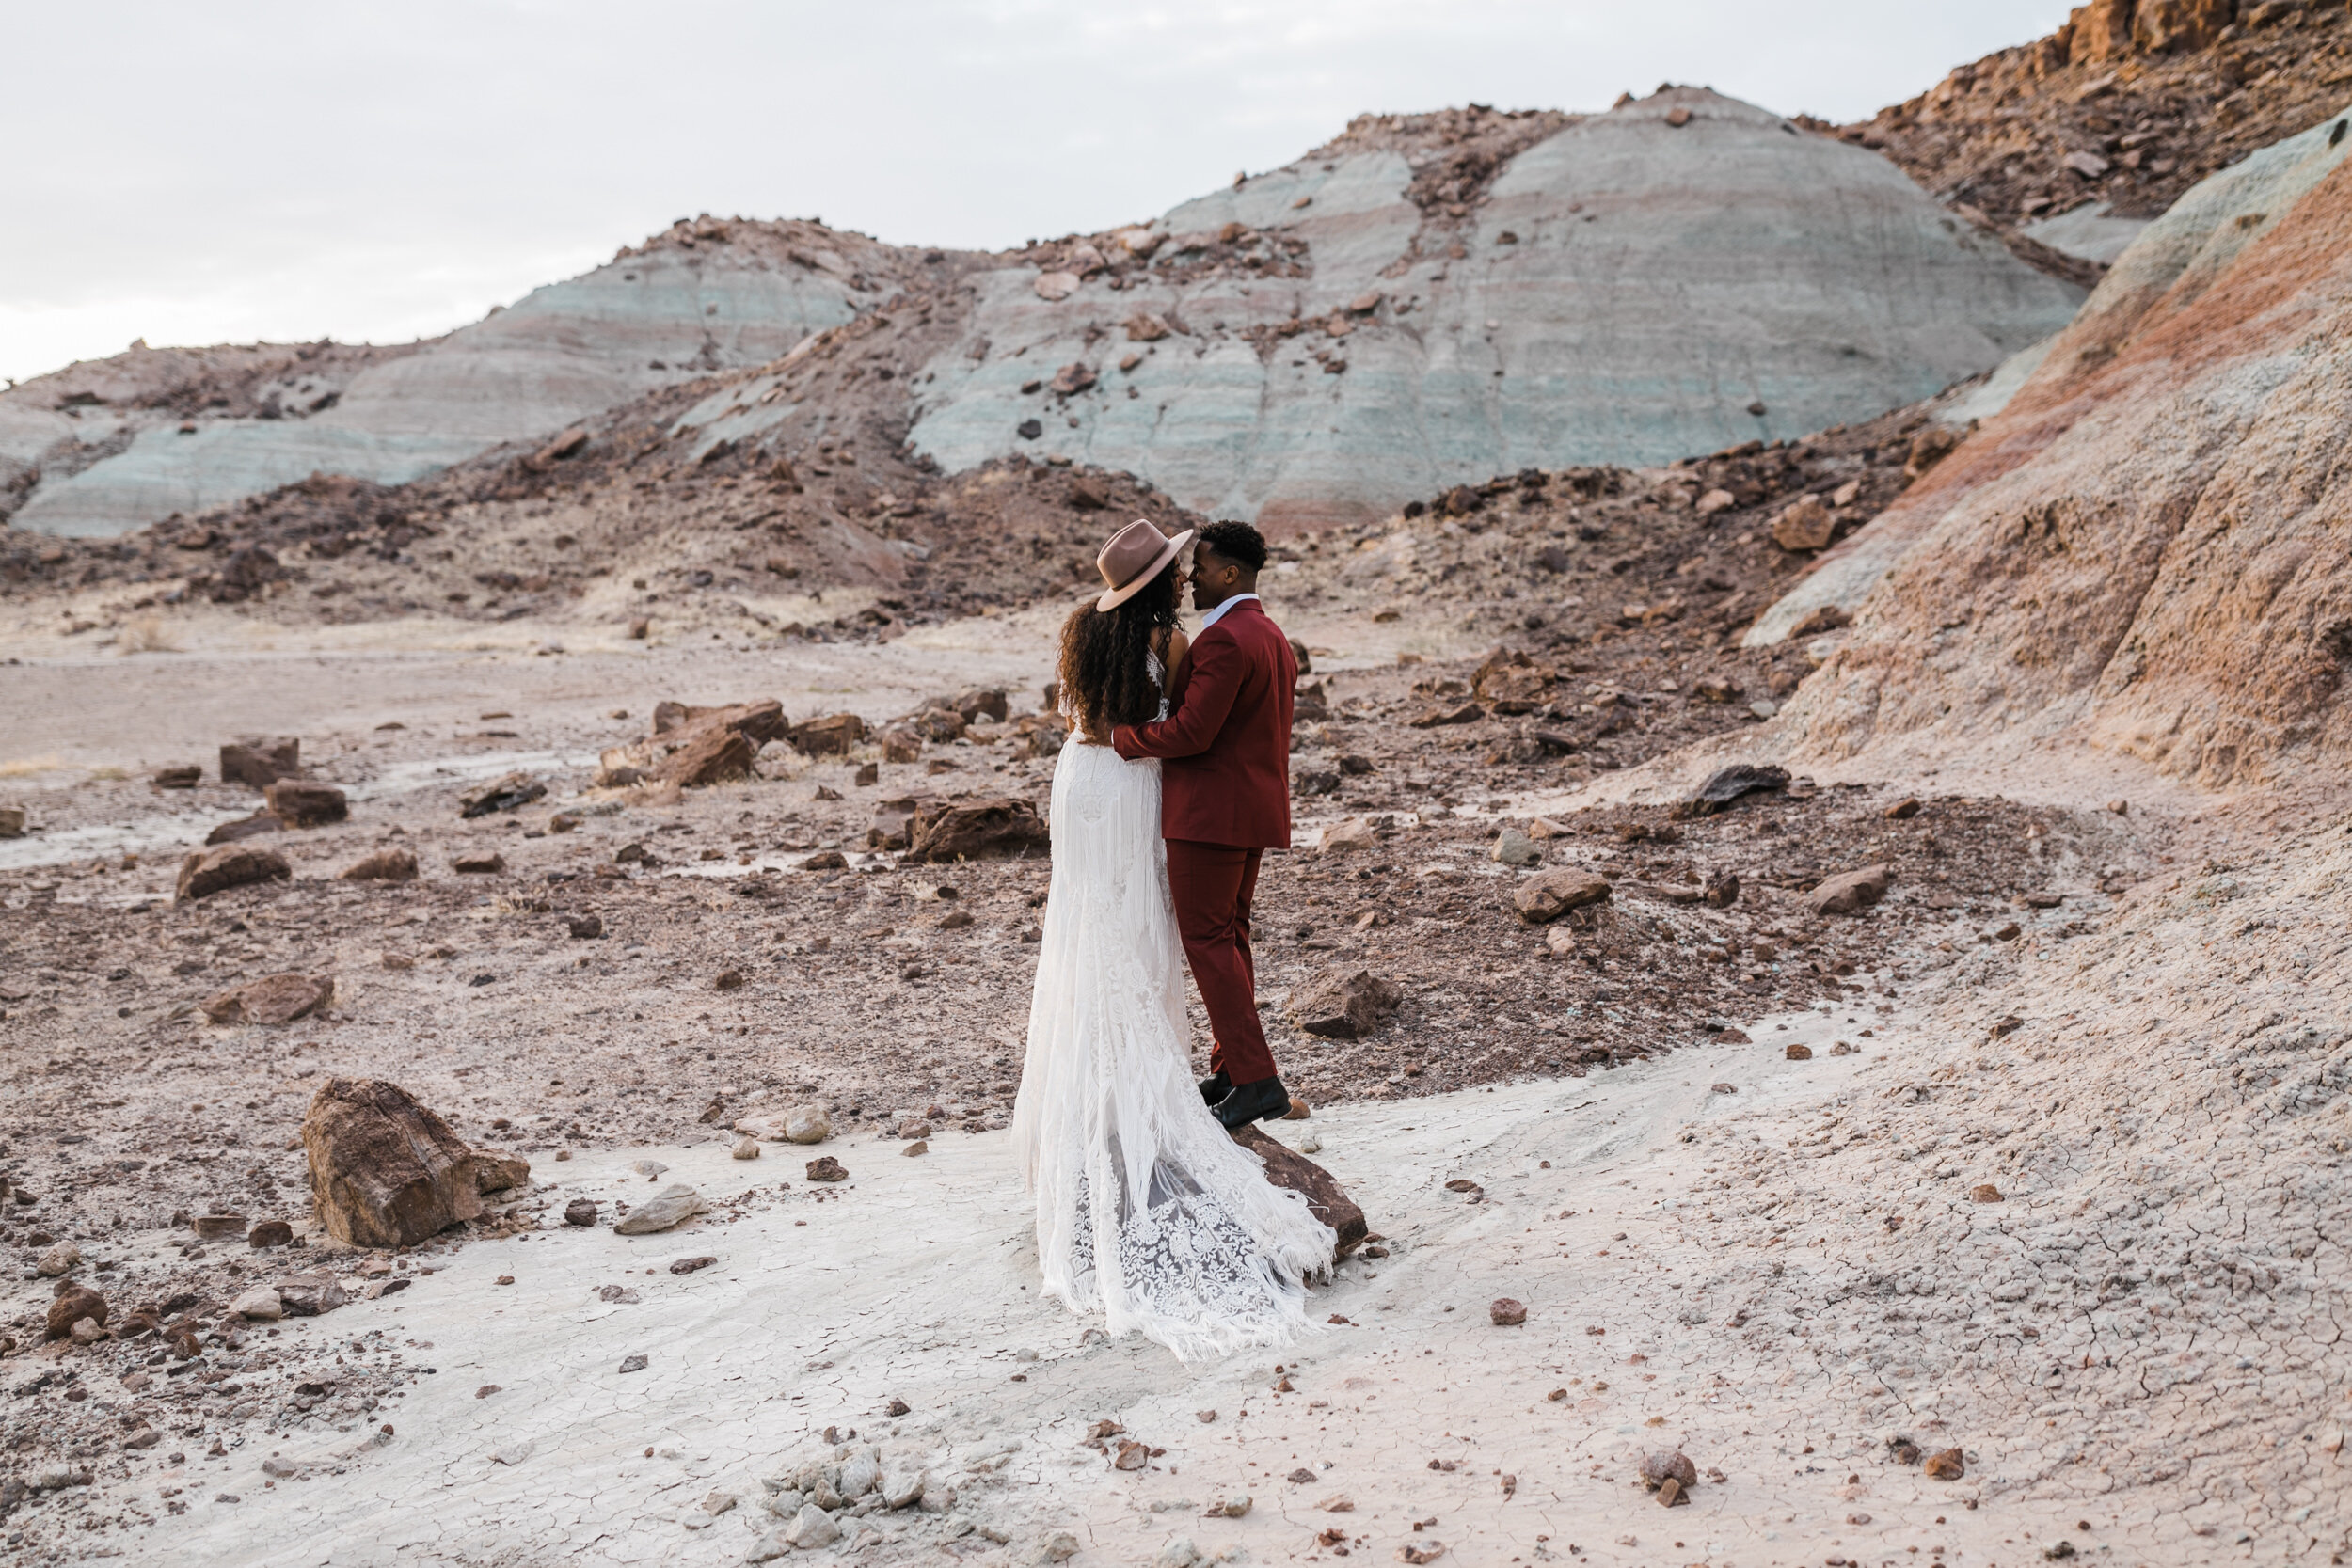 Moab Elopement Photographer | The Hearnes | Rue de Seine Dallas Gown | Bohemian Bride Fringe Wedding Dress &amp; Groom’s Burgundy Suit